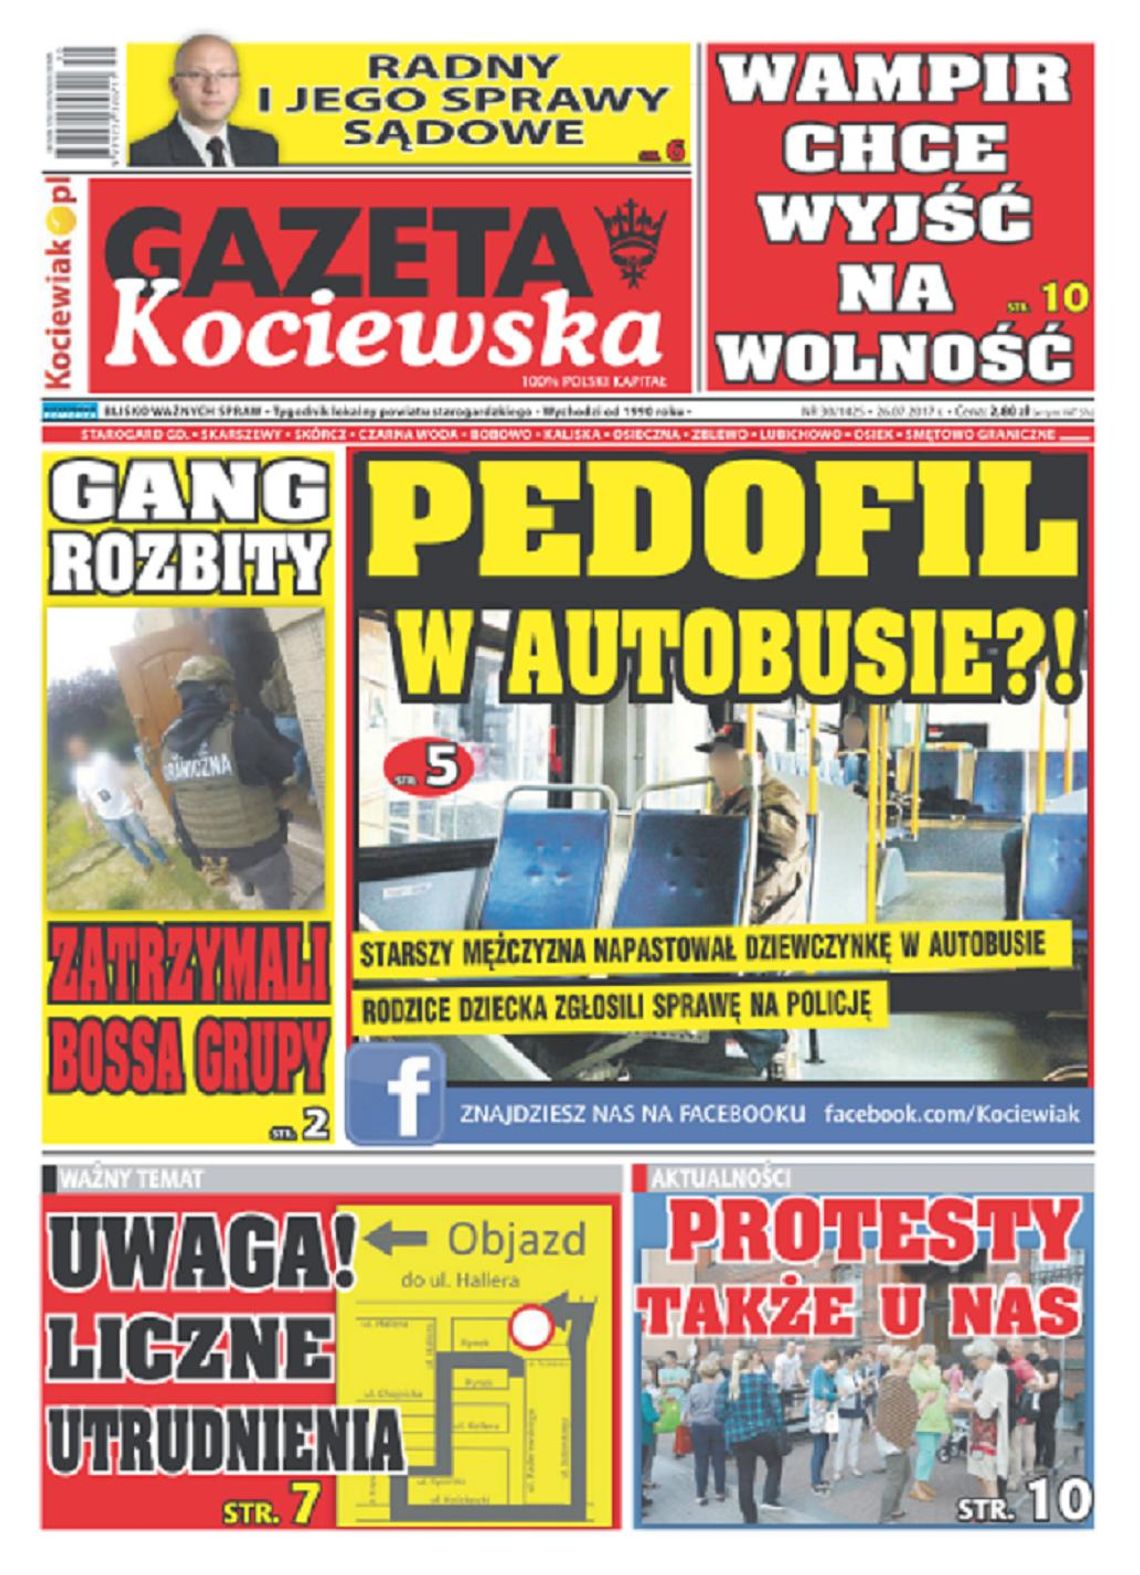 Najnowsza Gazeta Kociewska już w Twoim kiosku!